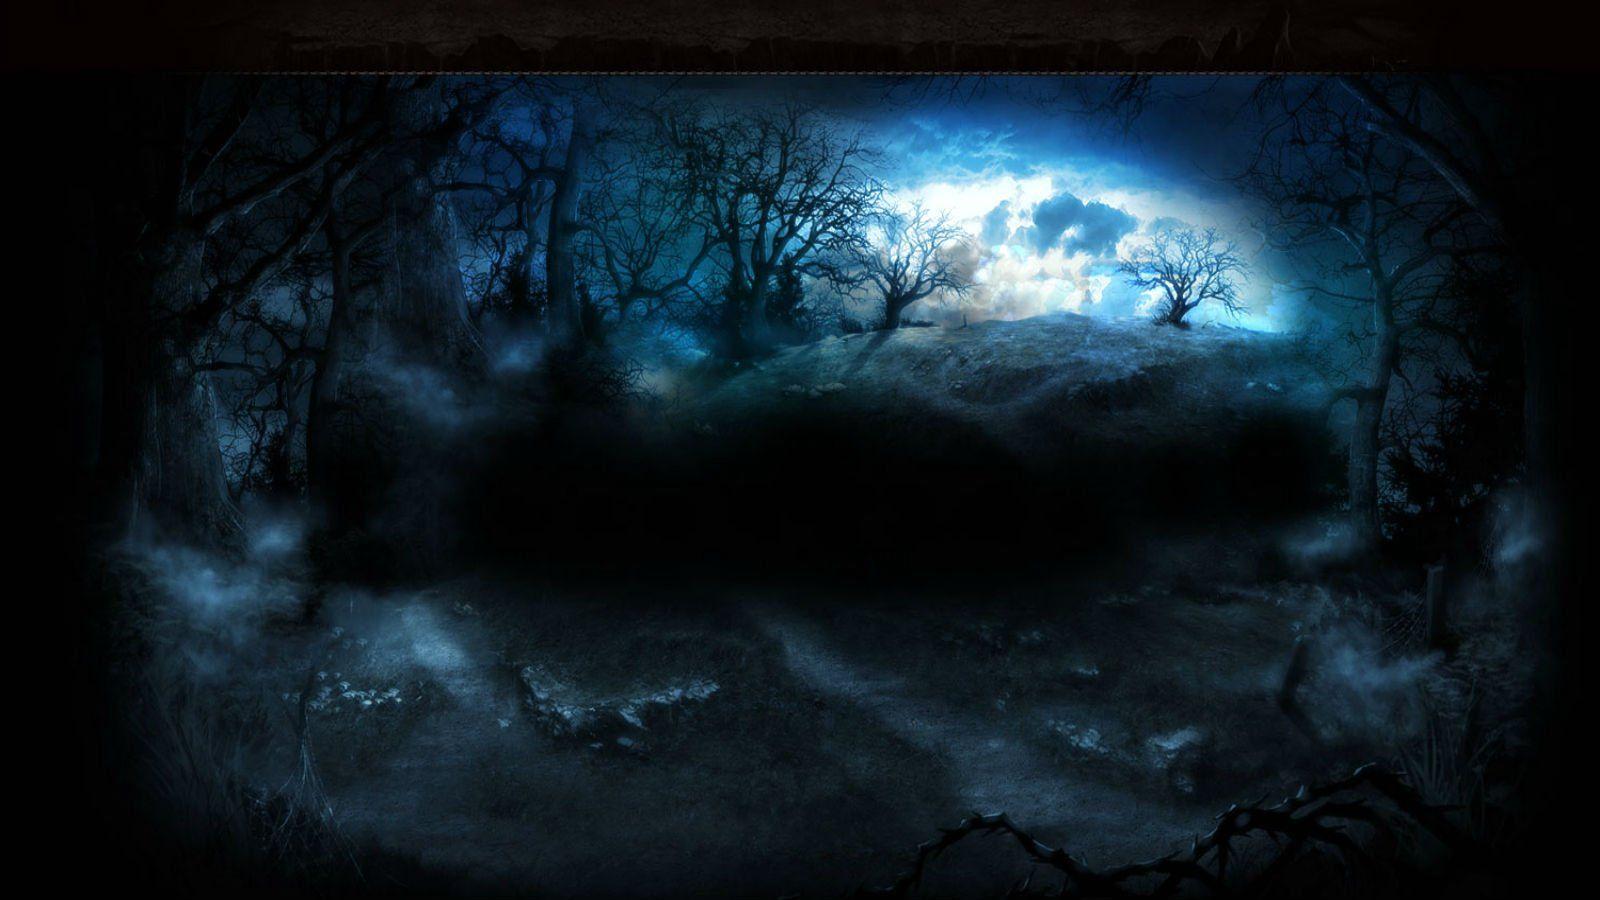 Bitefight Fantasy Dark Horror Vampire Werewolf Monster Online Mmo